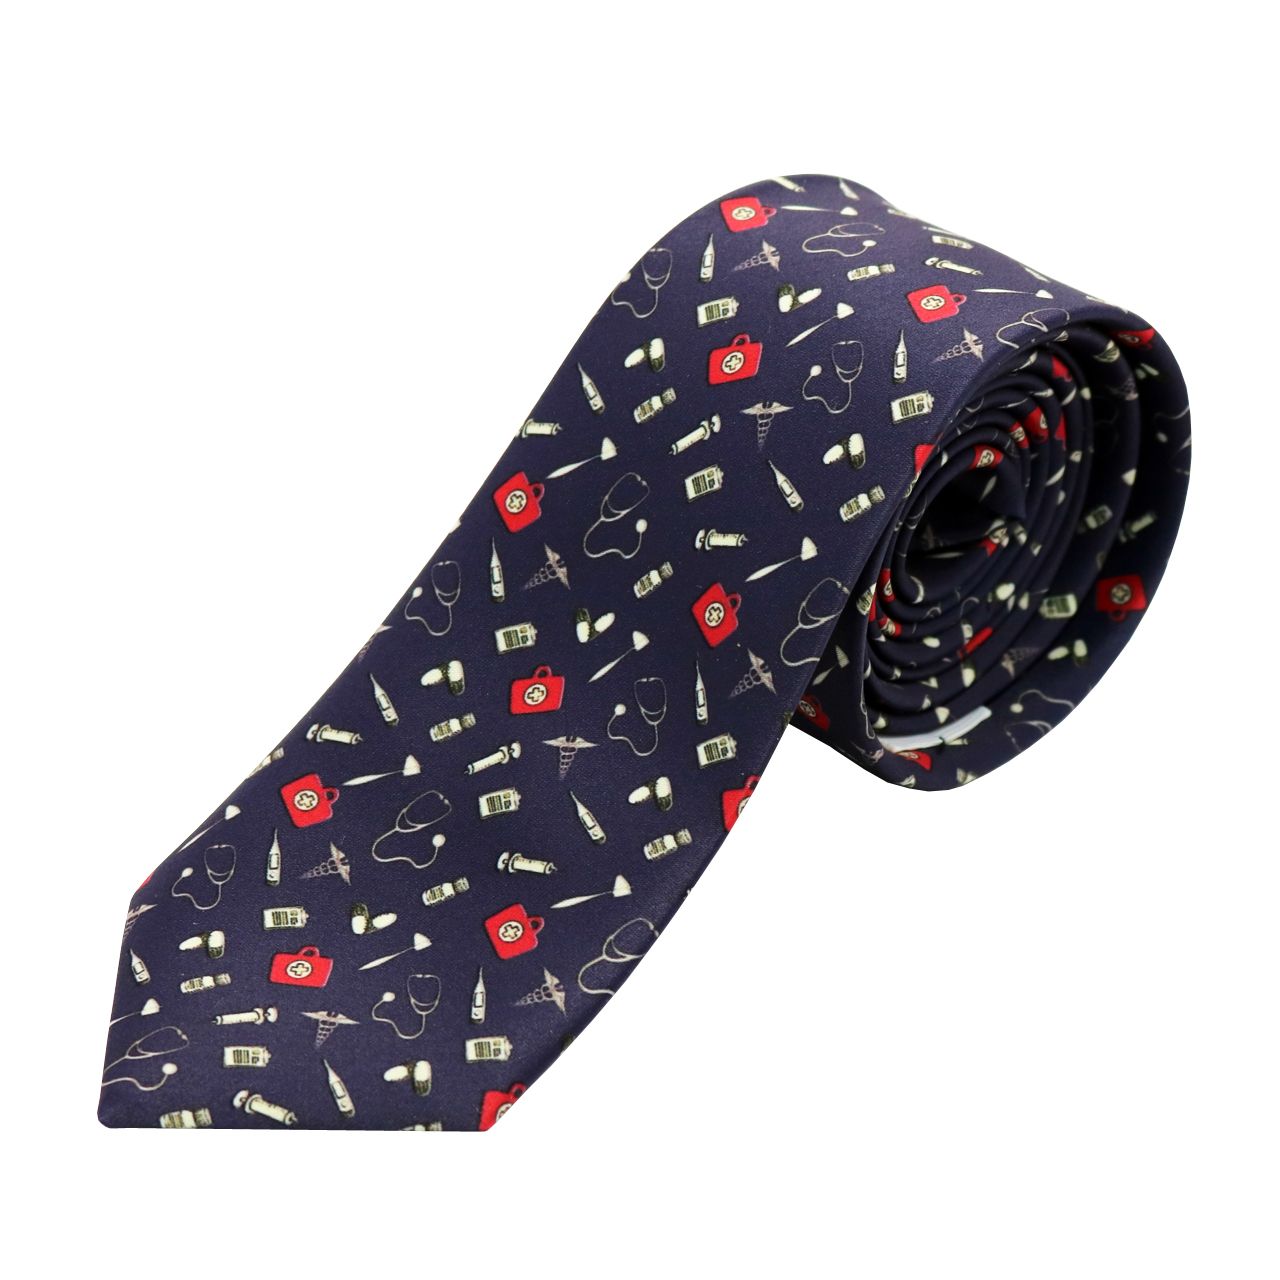 کراوات مردانه طرح پزشکی کد 03 -  - 1